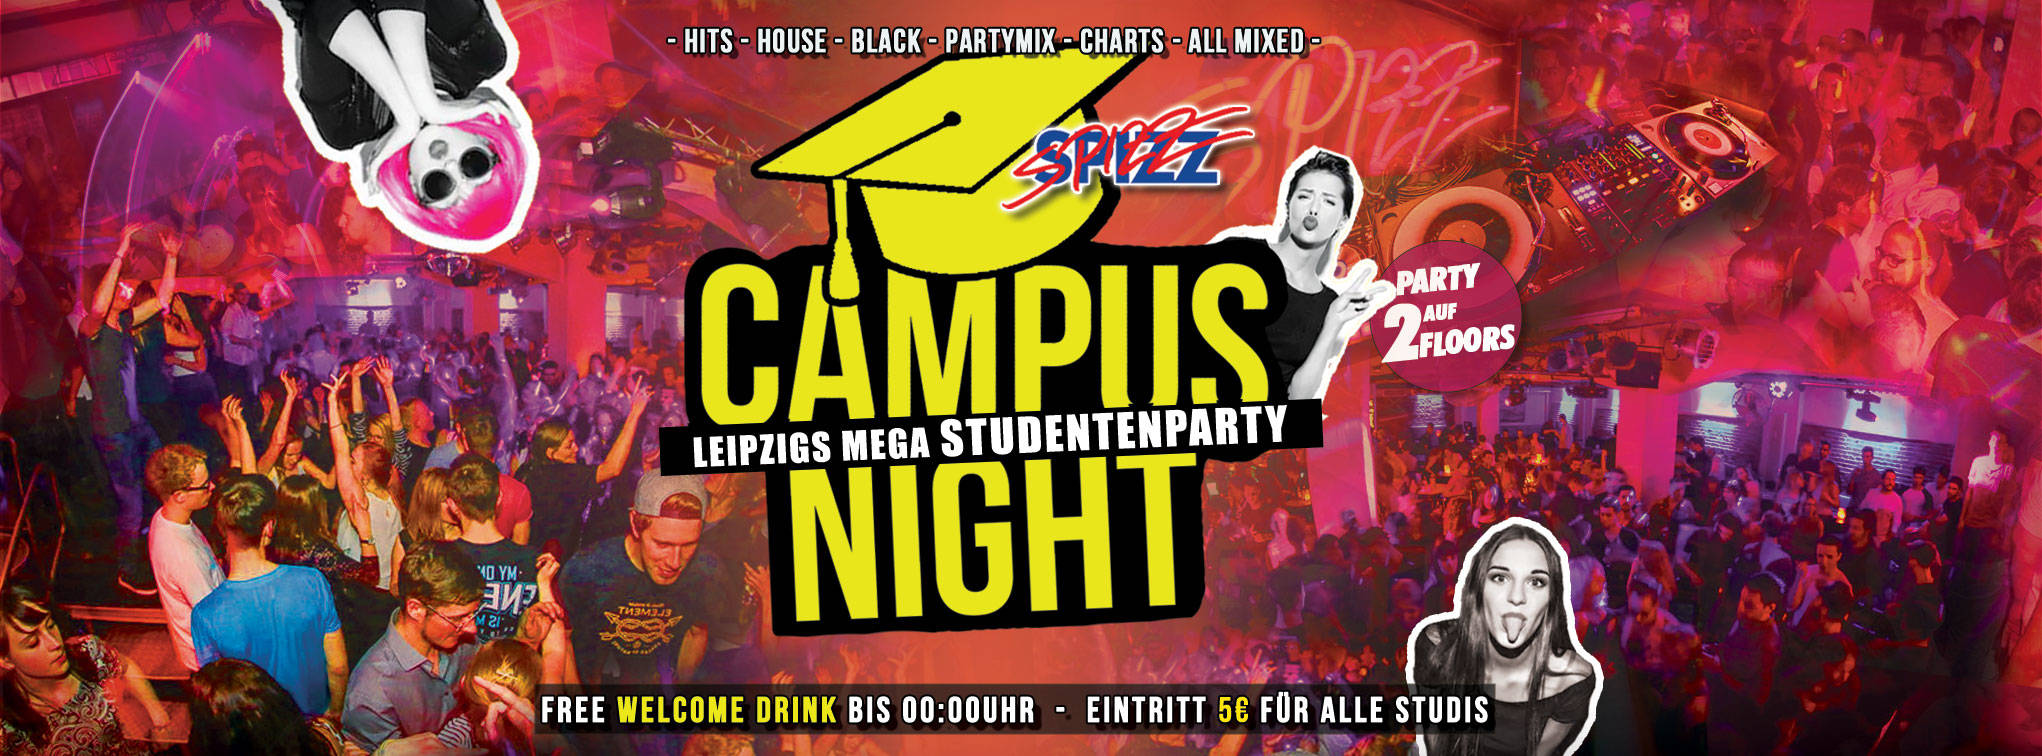 Campus Night - Leipzigs Mega Studentenparty auf 2 Floors - SPIZZ Leipzig!